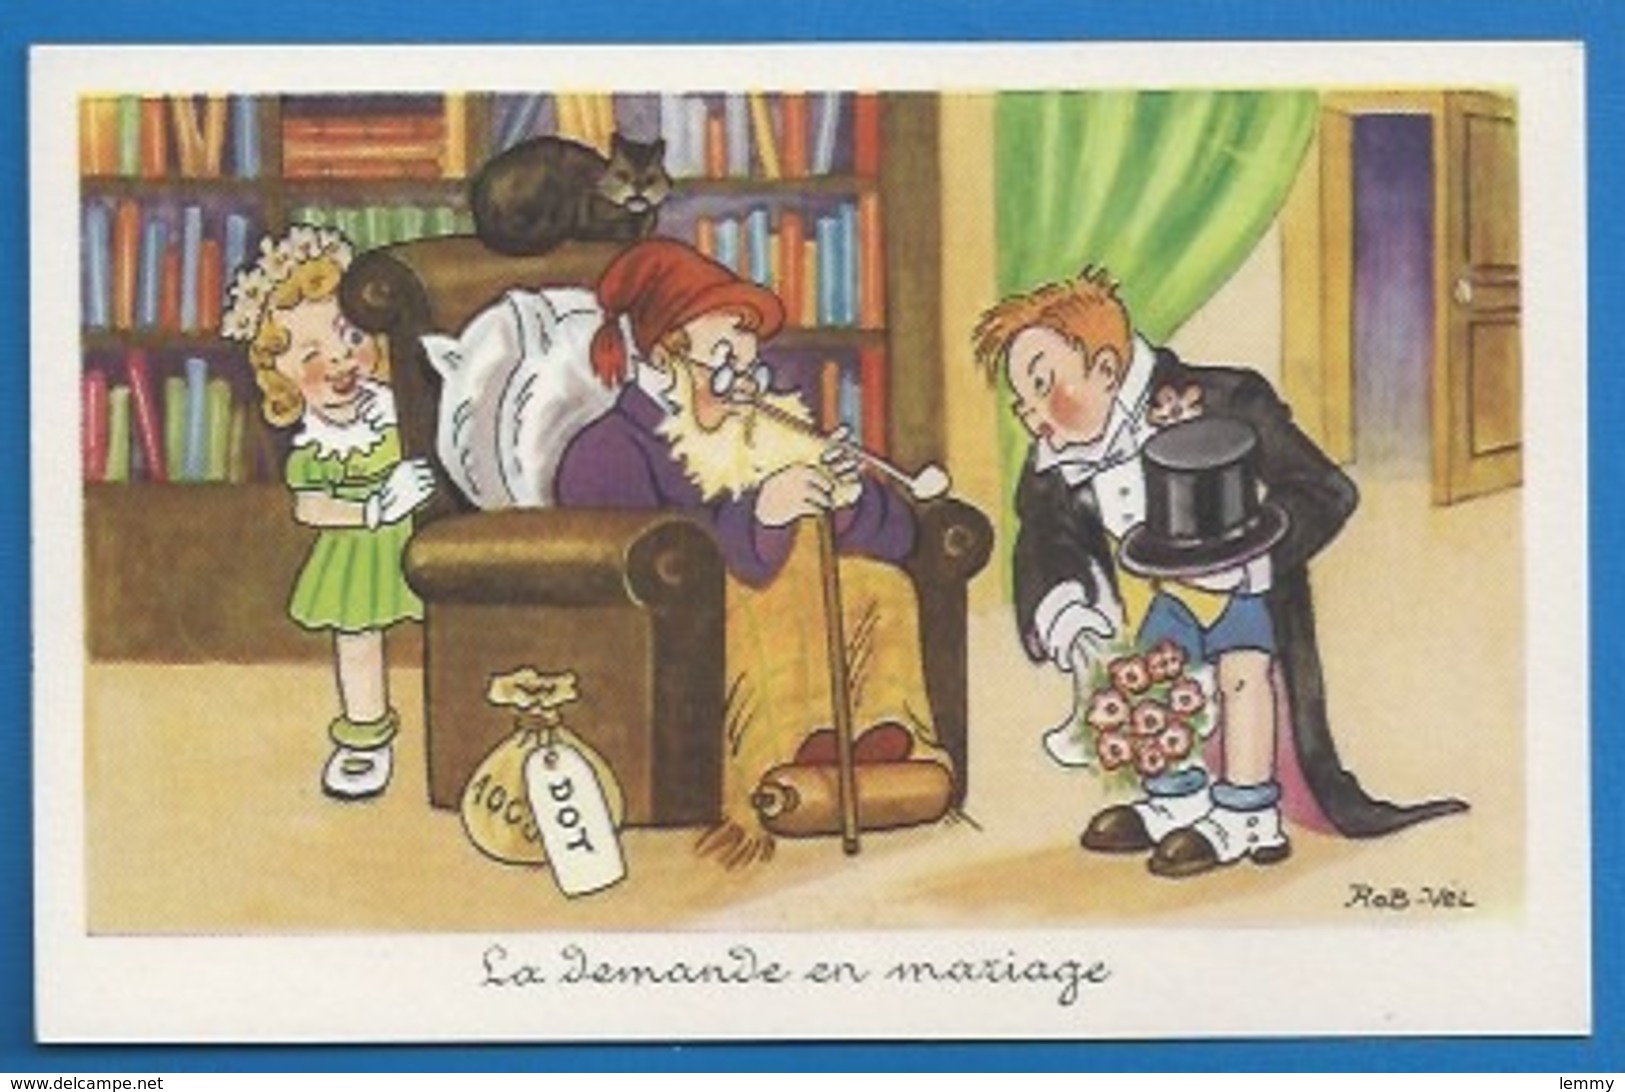 HUMOUR  - ILLUSTRATEUR : ROB-VEL - LA DEMANDE EN MARIAGE - LA DOT -   PHOTOCHROM 204 - Humour